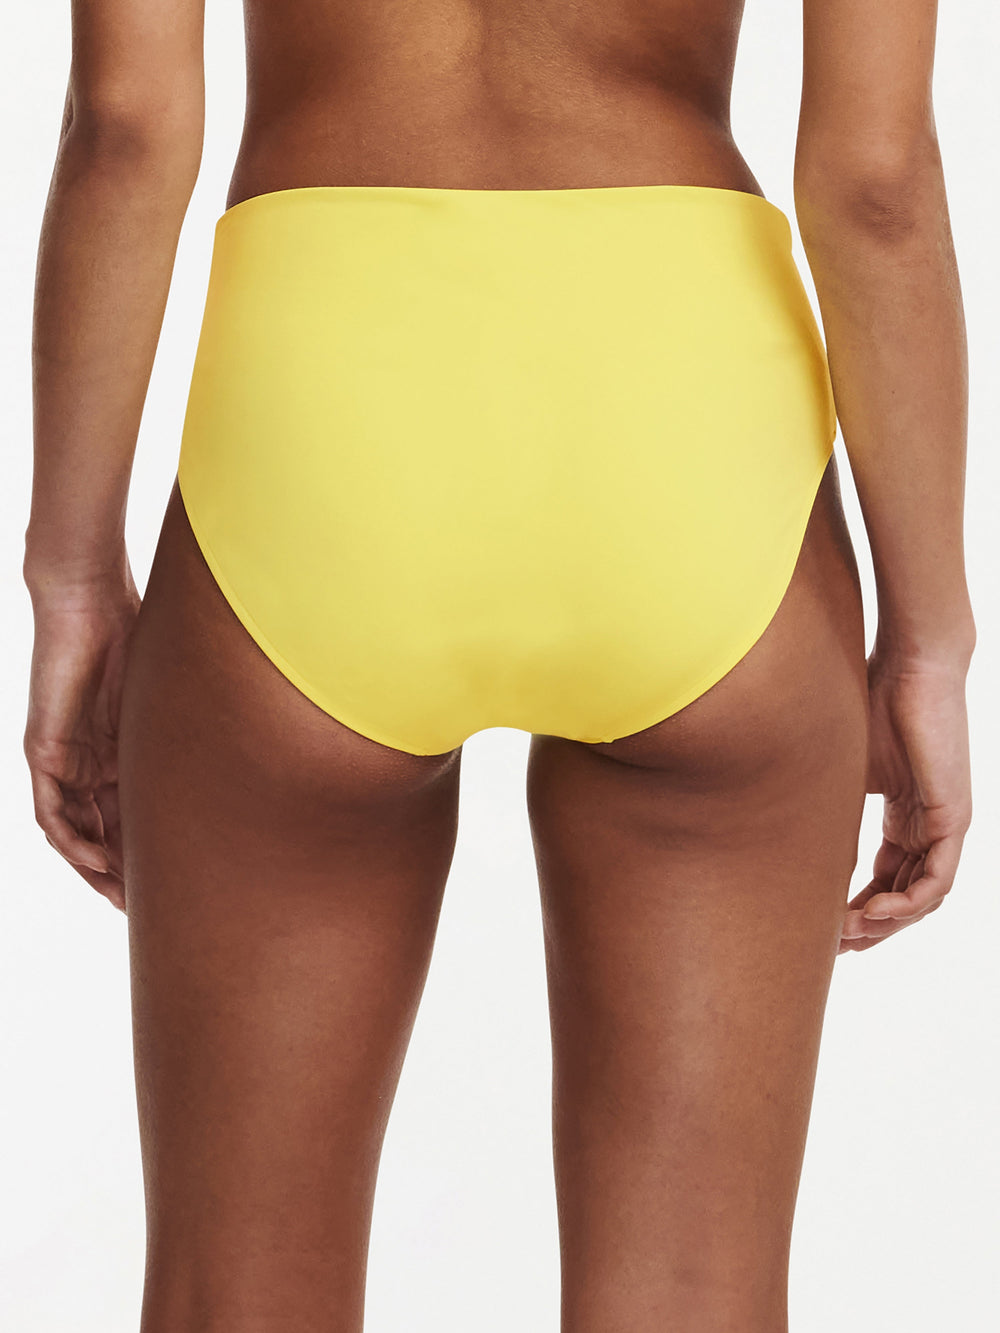 Chantelle Swimwear Inspire Full Slip - Sunshine Full Bikini Slip Chantelle